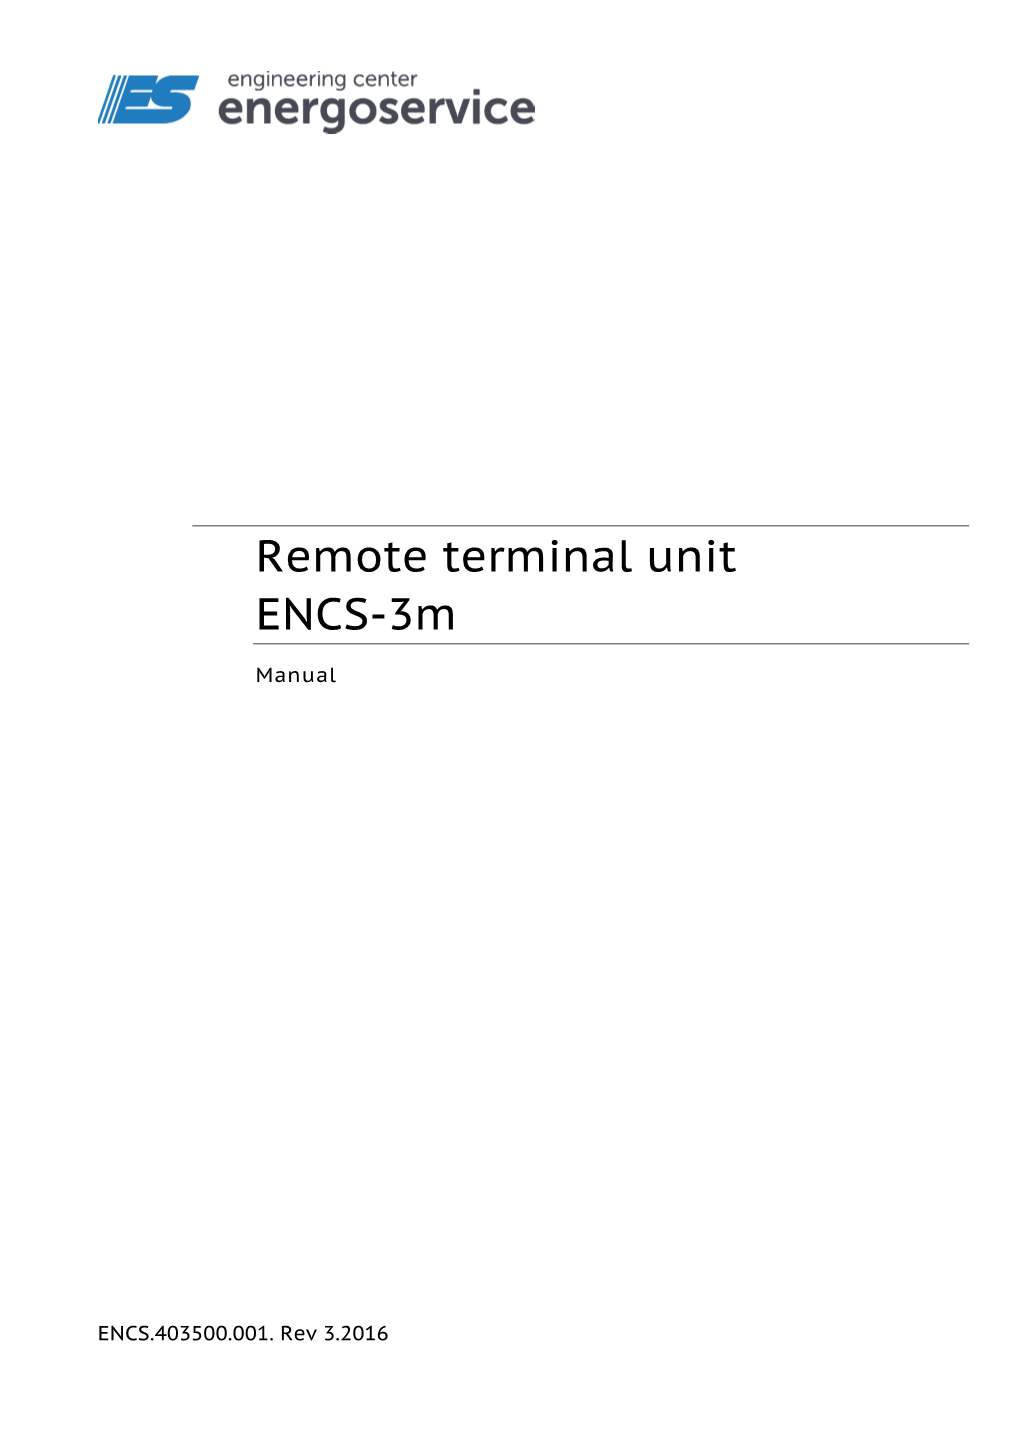 Remote Terminal Unit ENCS-3M